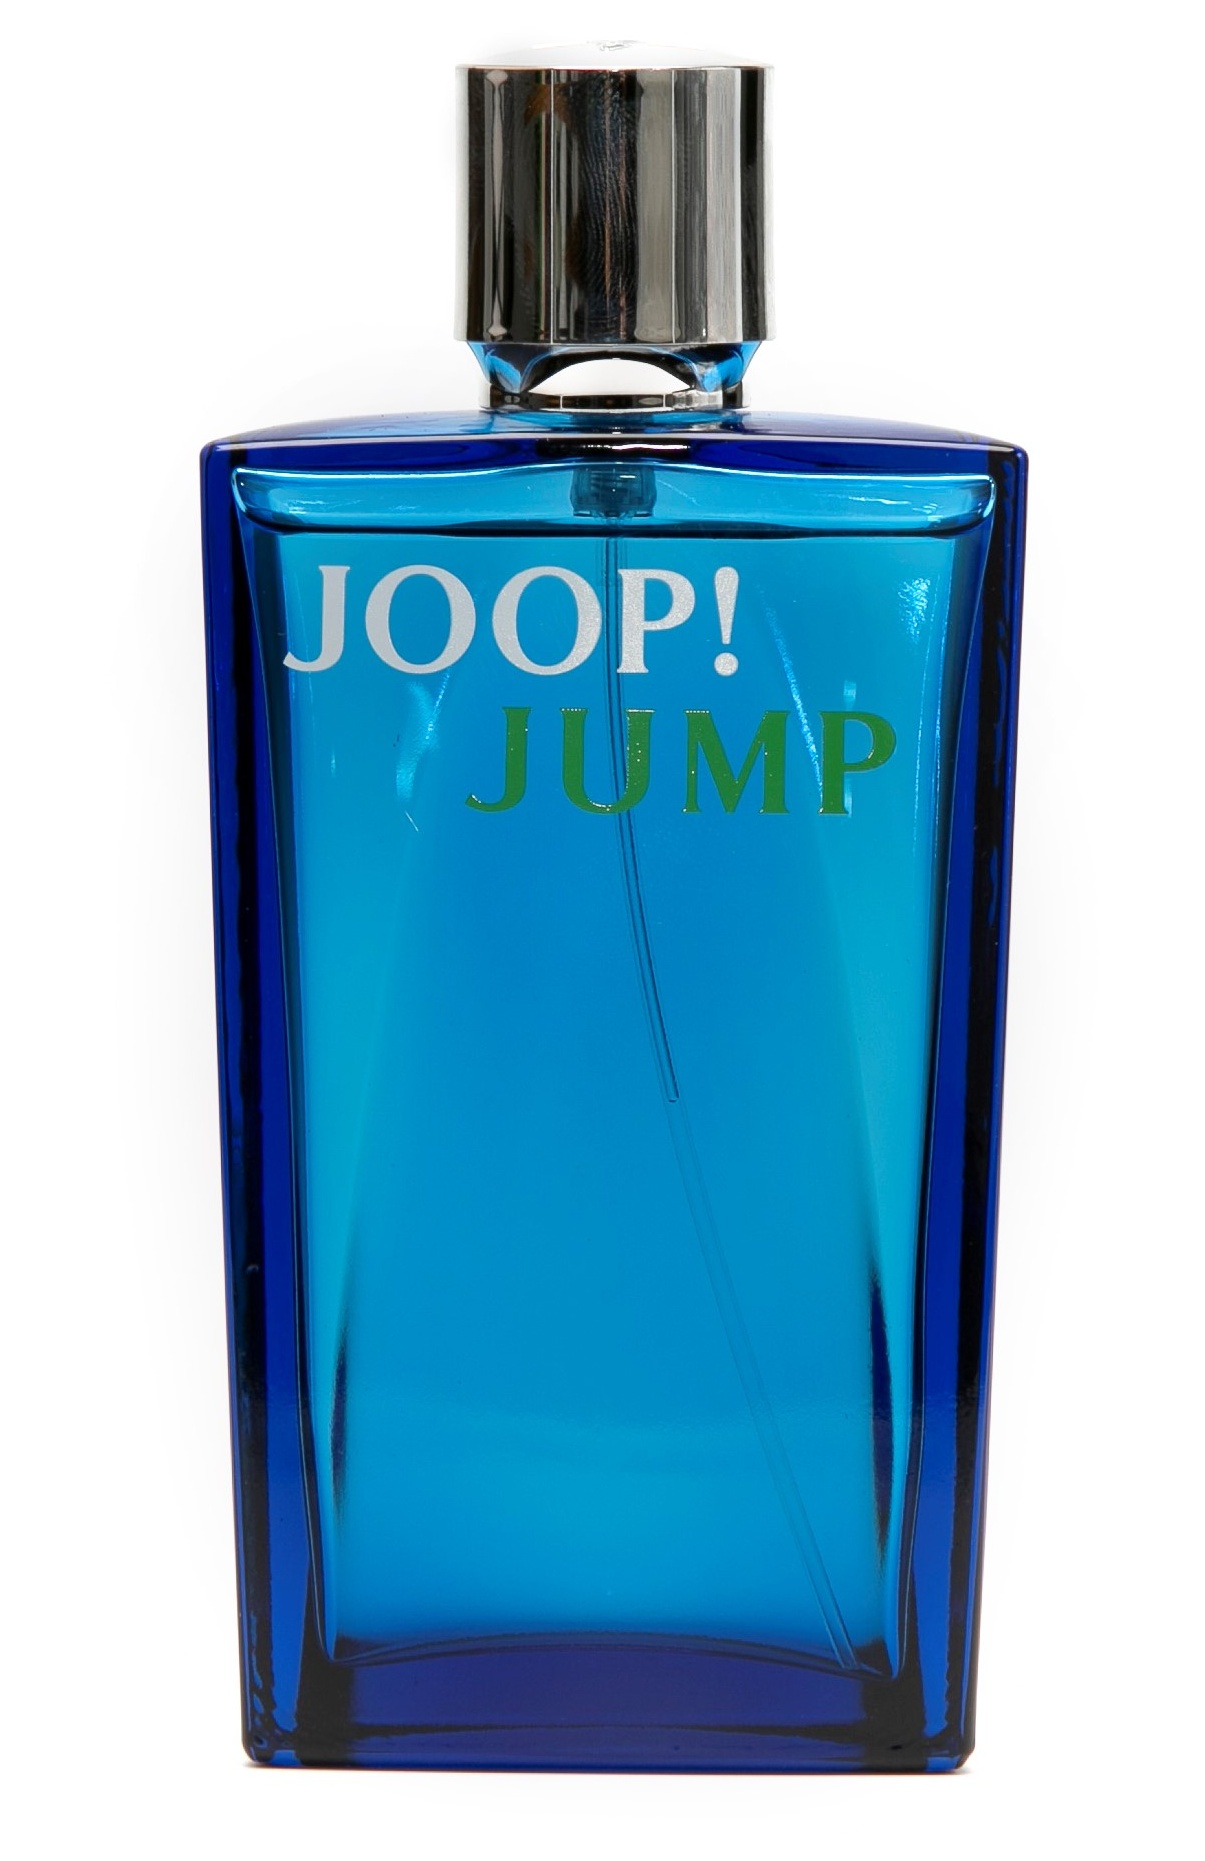 joop jump 100